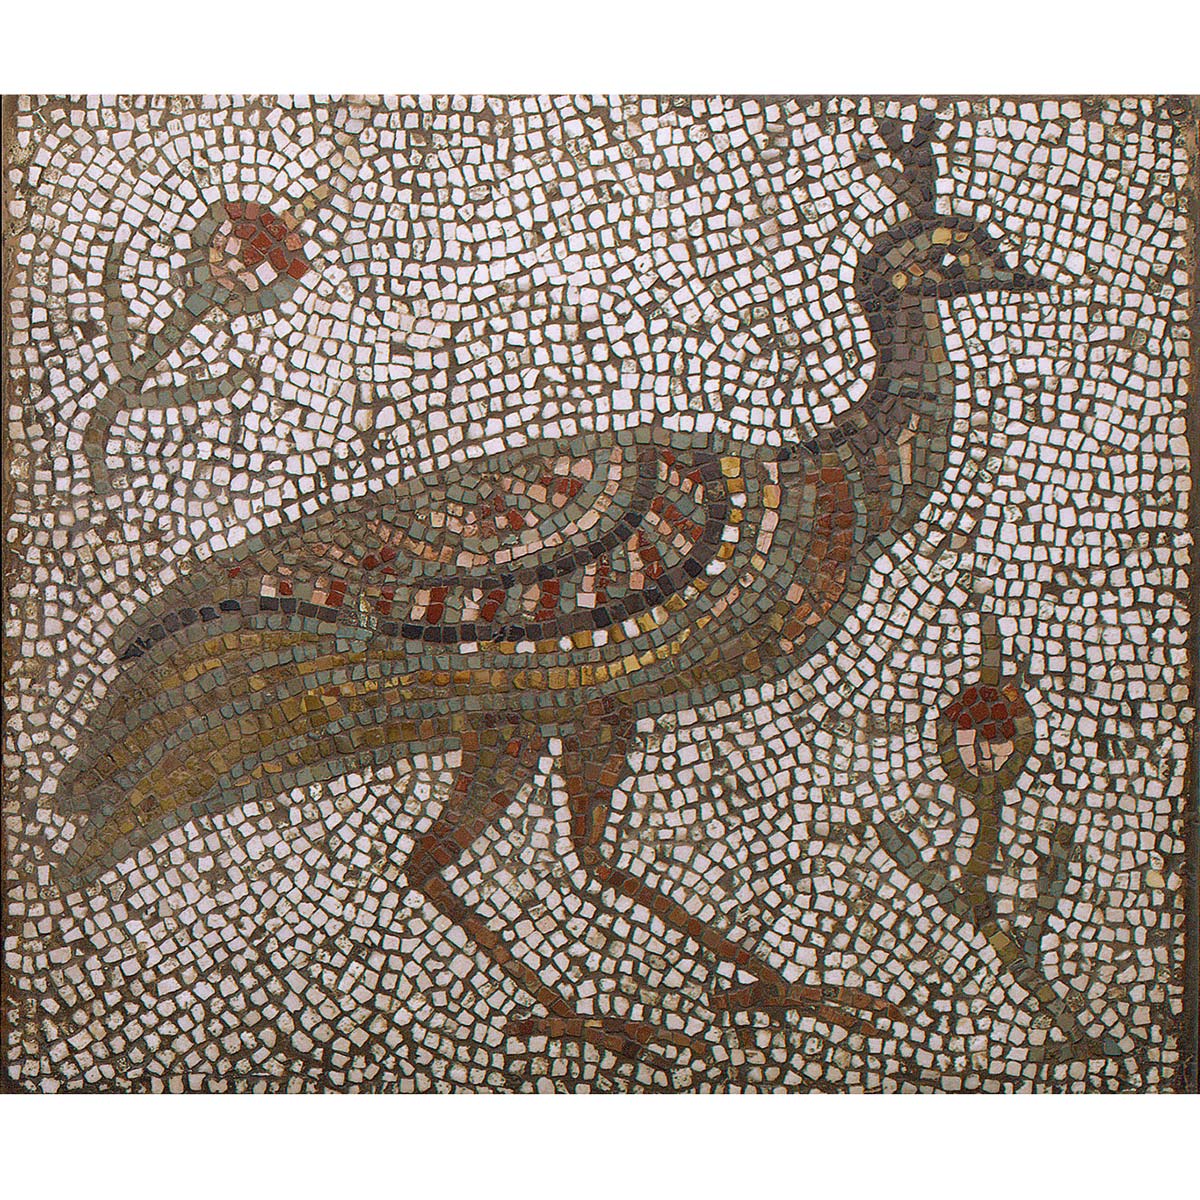 Mosaico romano pavo real